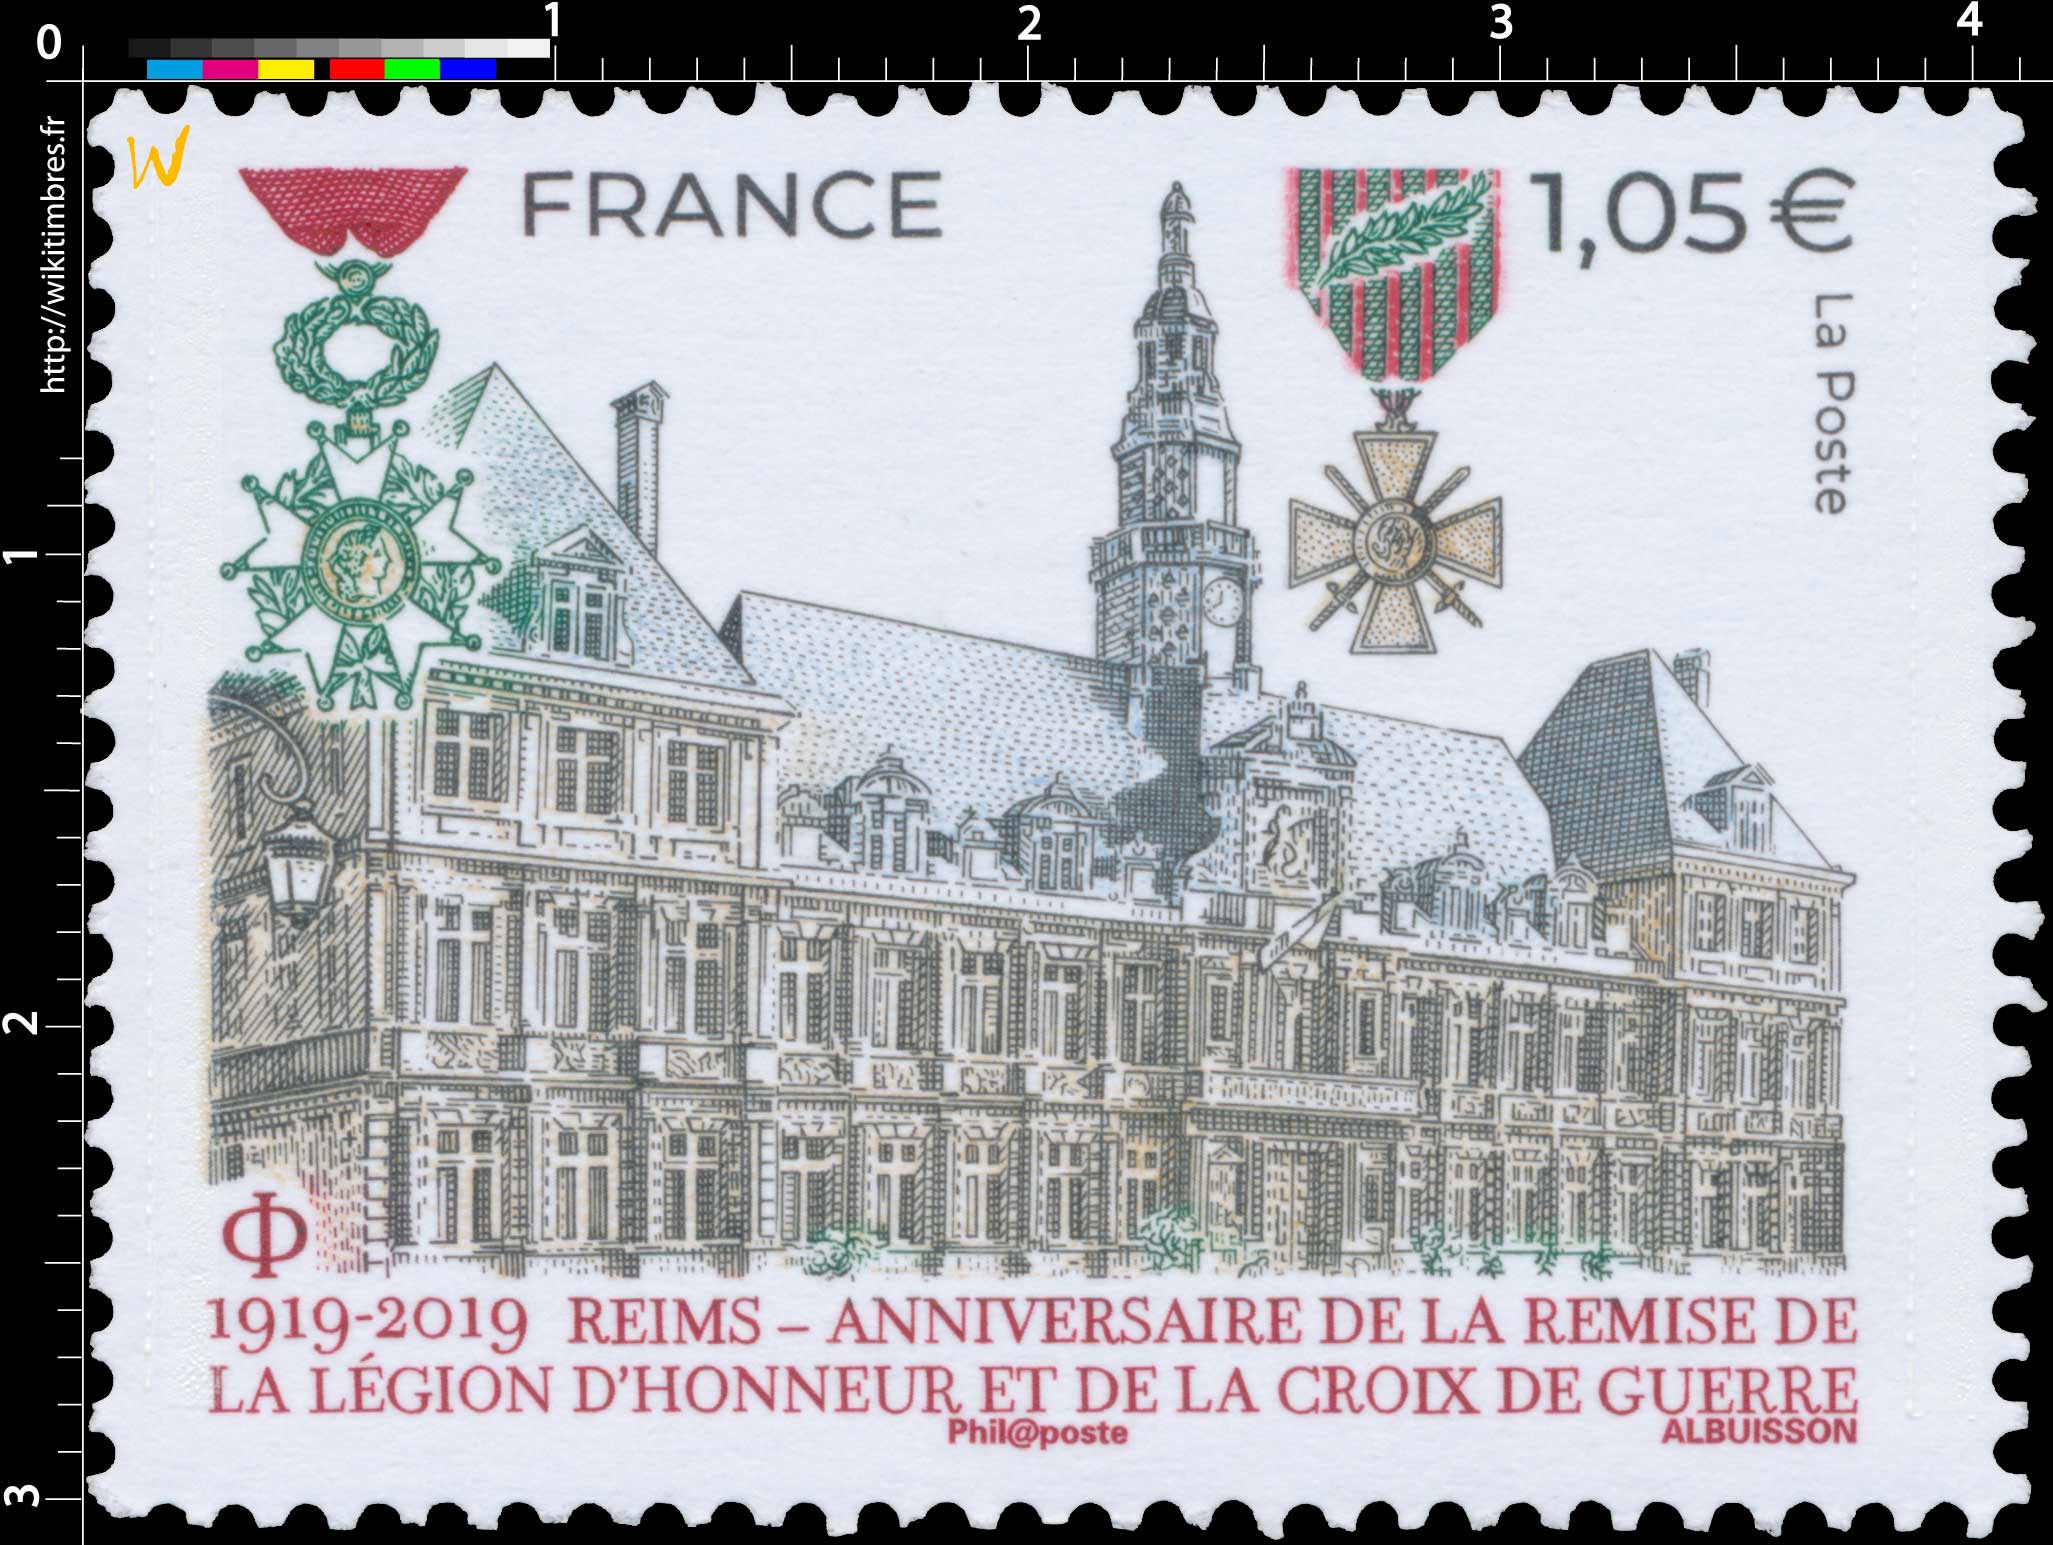 1919 - 2019 REIMS - ANNIVERSAIRE DE LA REMISE DE LA LÉGION D'HONNEUR ET DE LA CROIX DE GUERRE